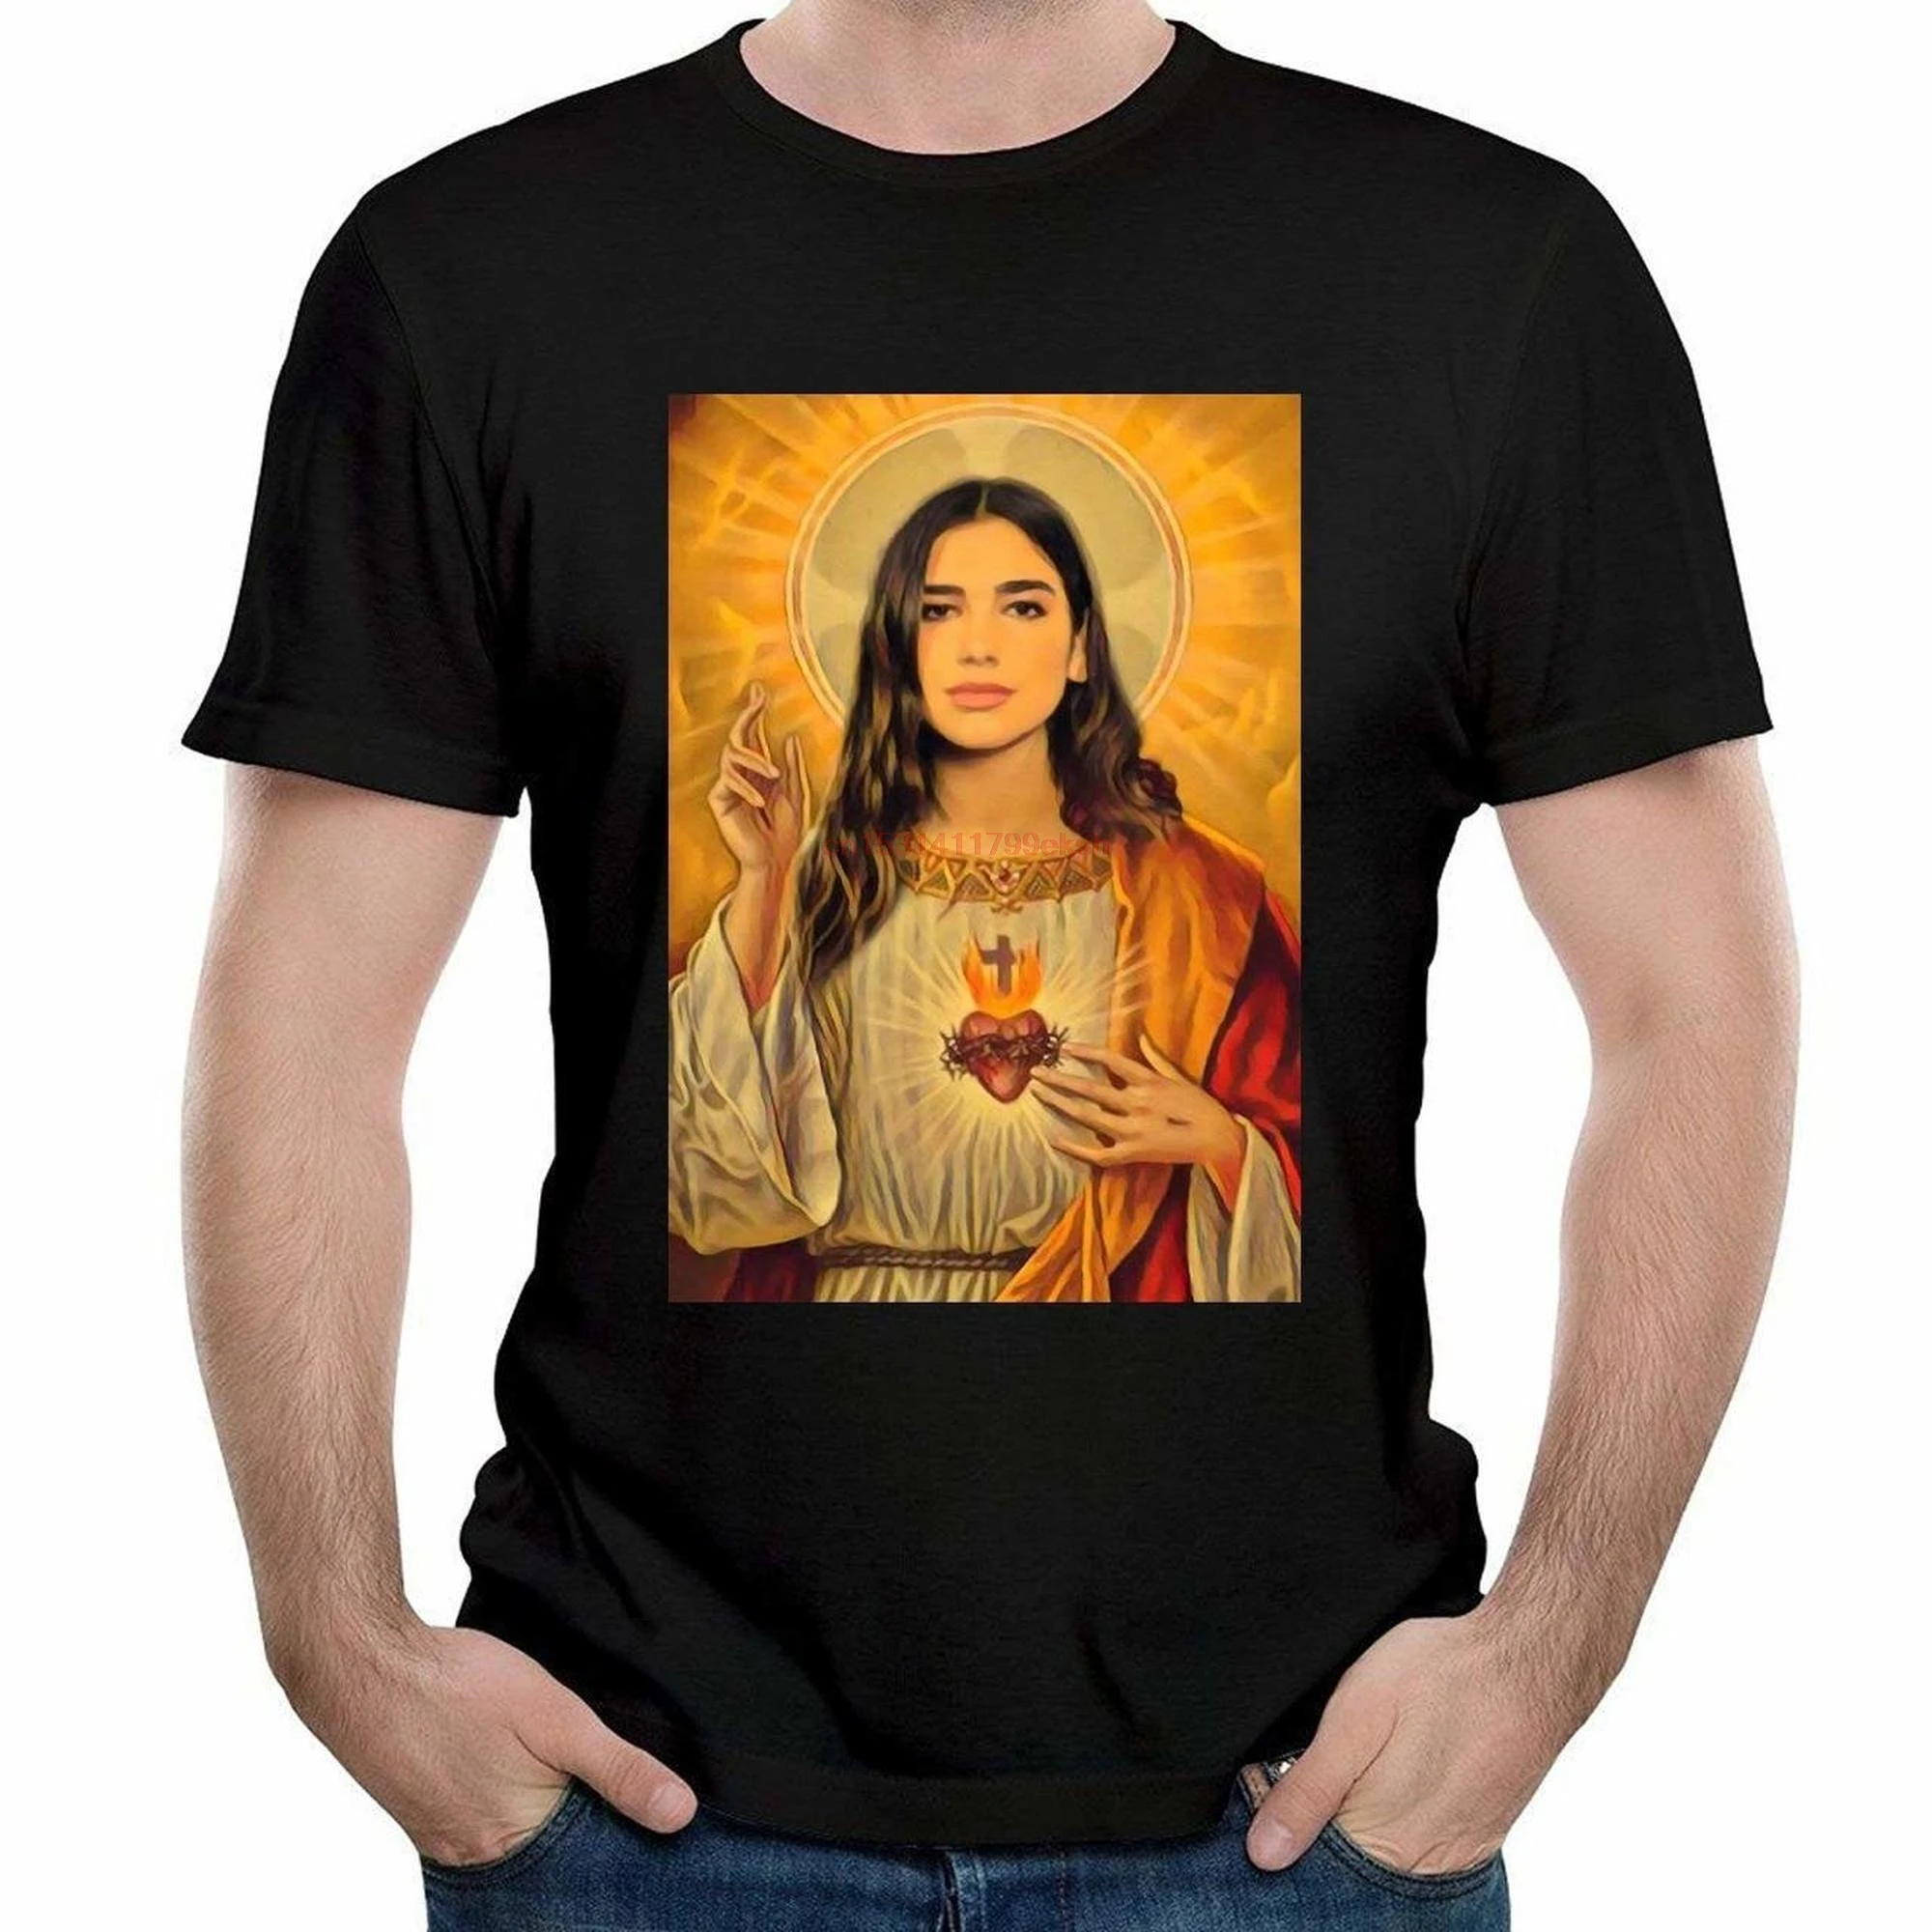 

Мужская футболка, Мужская футболка с интровертором, футболки для Дуа, липа, Иисус, черные женские футболки 760